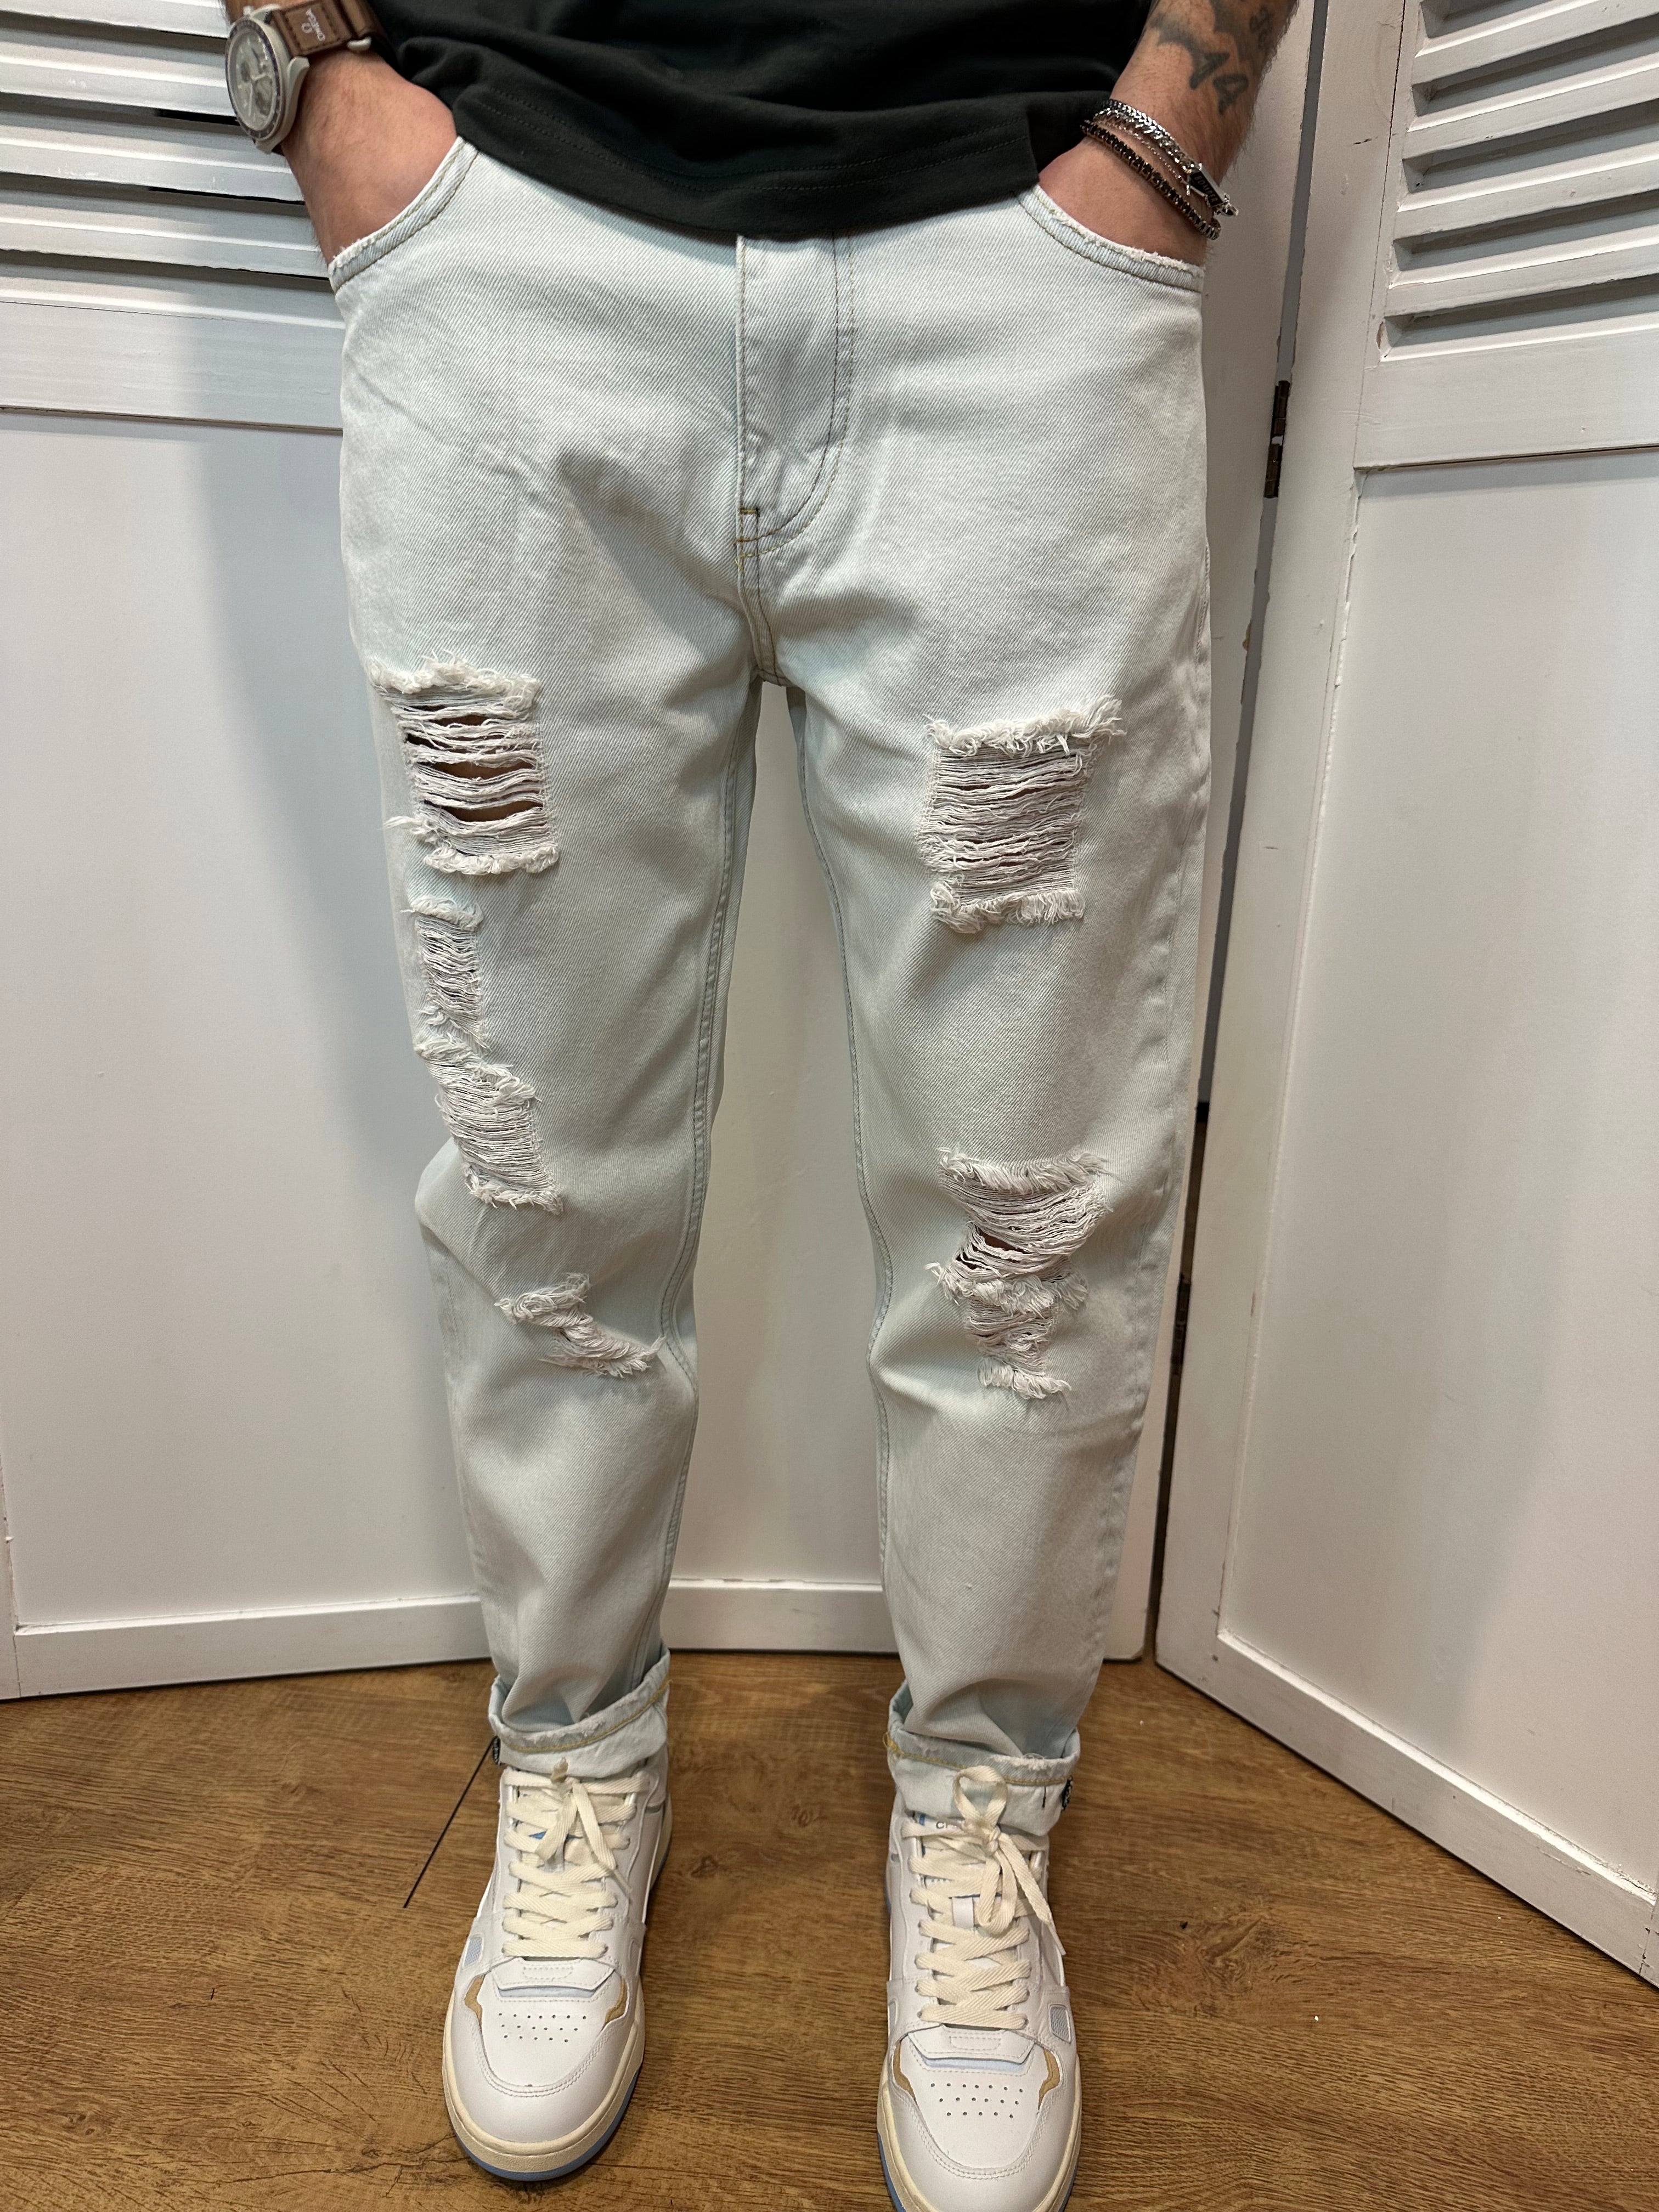 Jeans chiaro con rotture